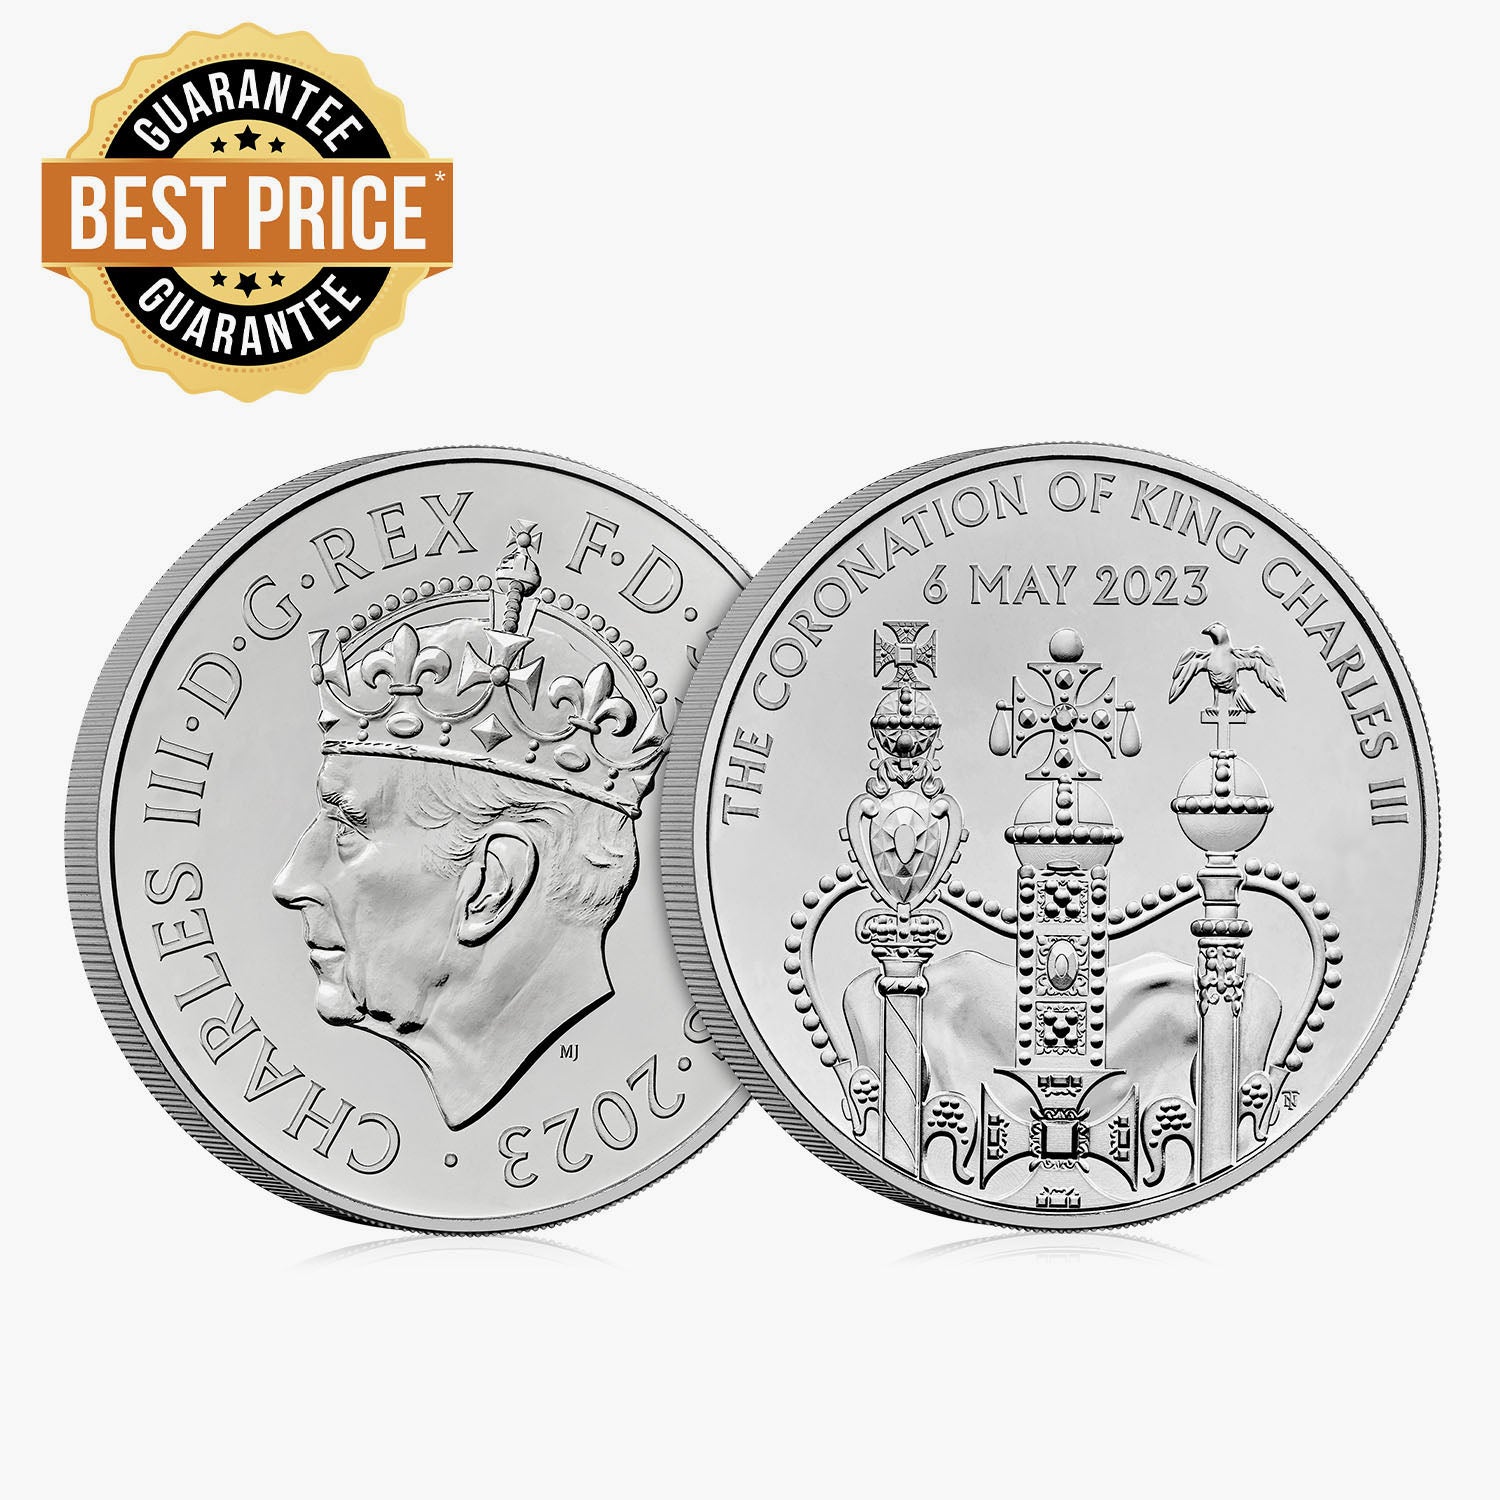 تتويج جلالة الملك تشارلز عملة رائعة غير متداولة بقيمة 5 جنيهات استرلينية